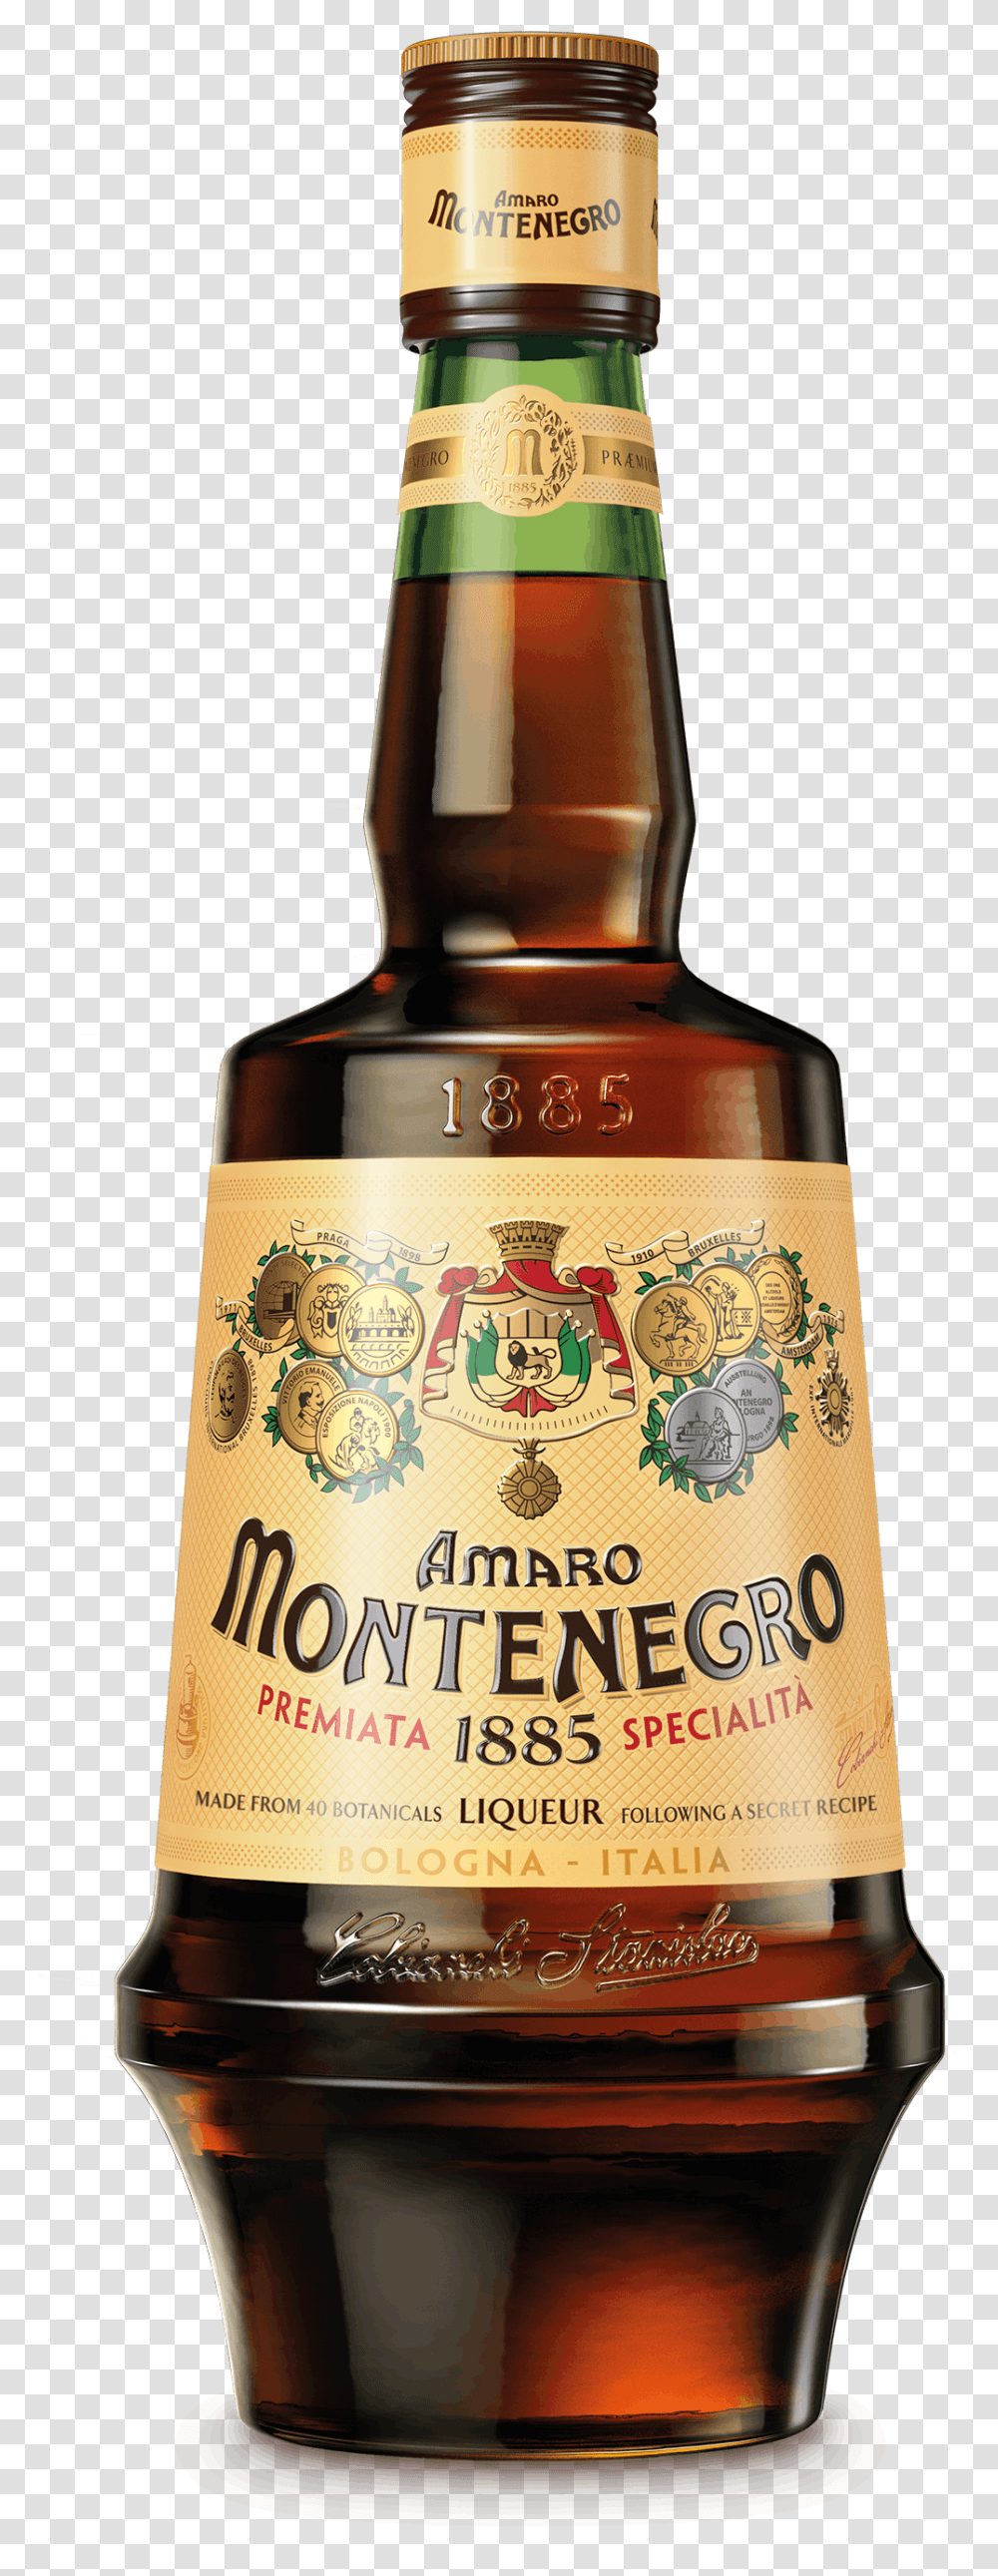 Montenegro Amaro Italiano Liqueur Montenegro Amaro, Liquor, Alcohol, Beverage, Drink Transparent Png